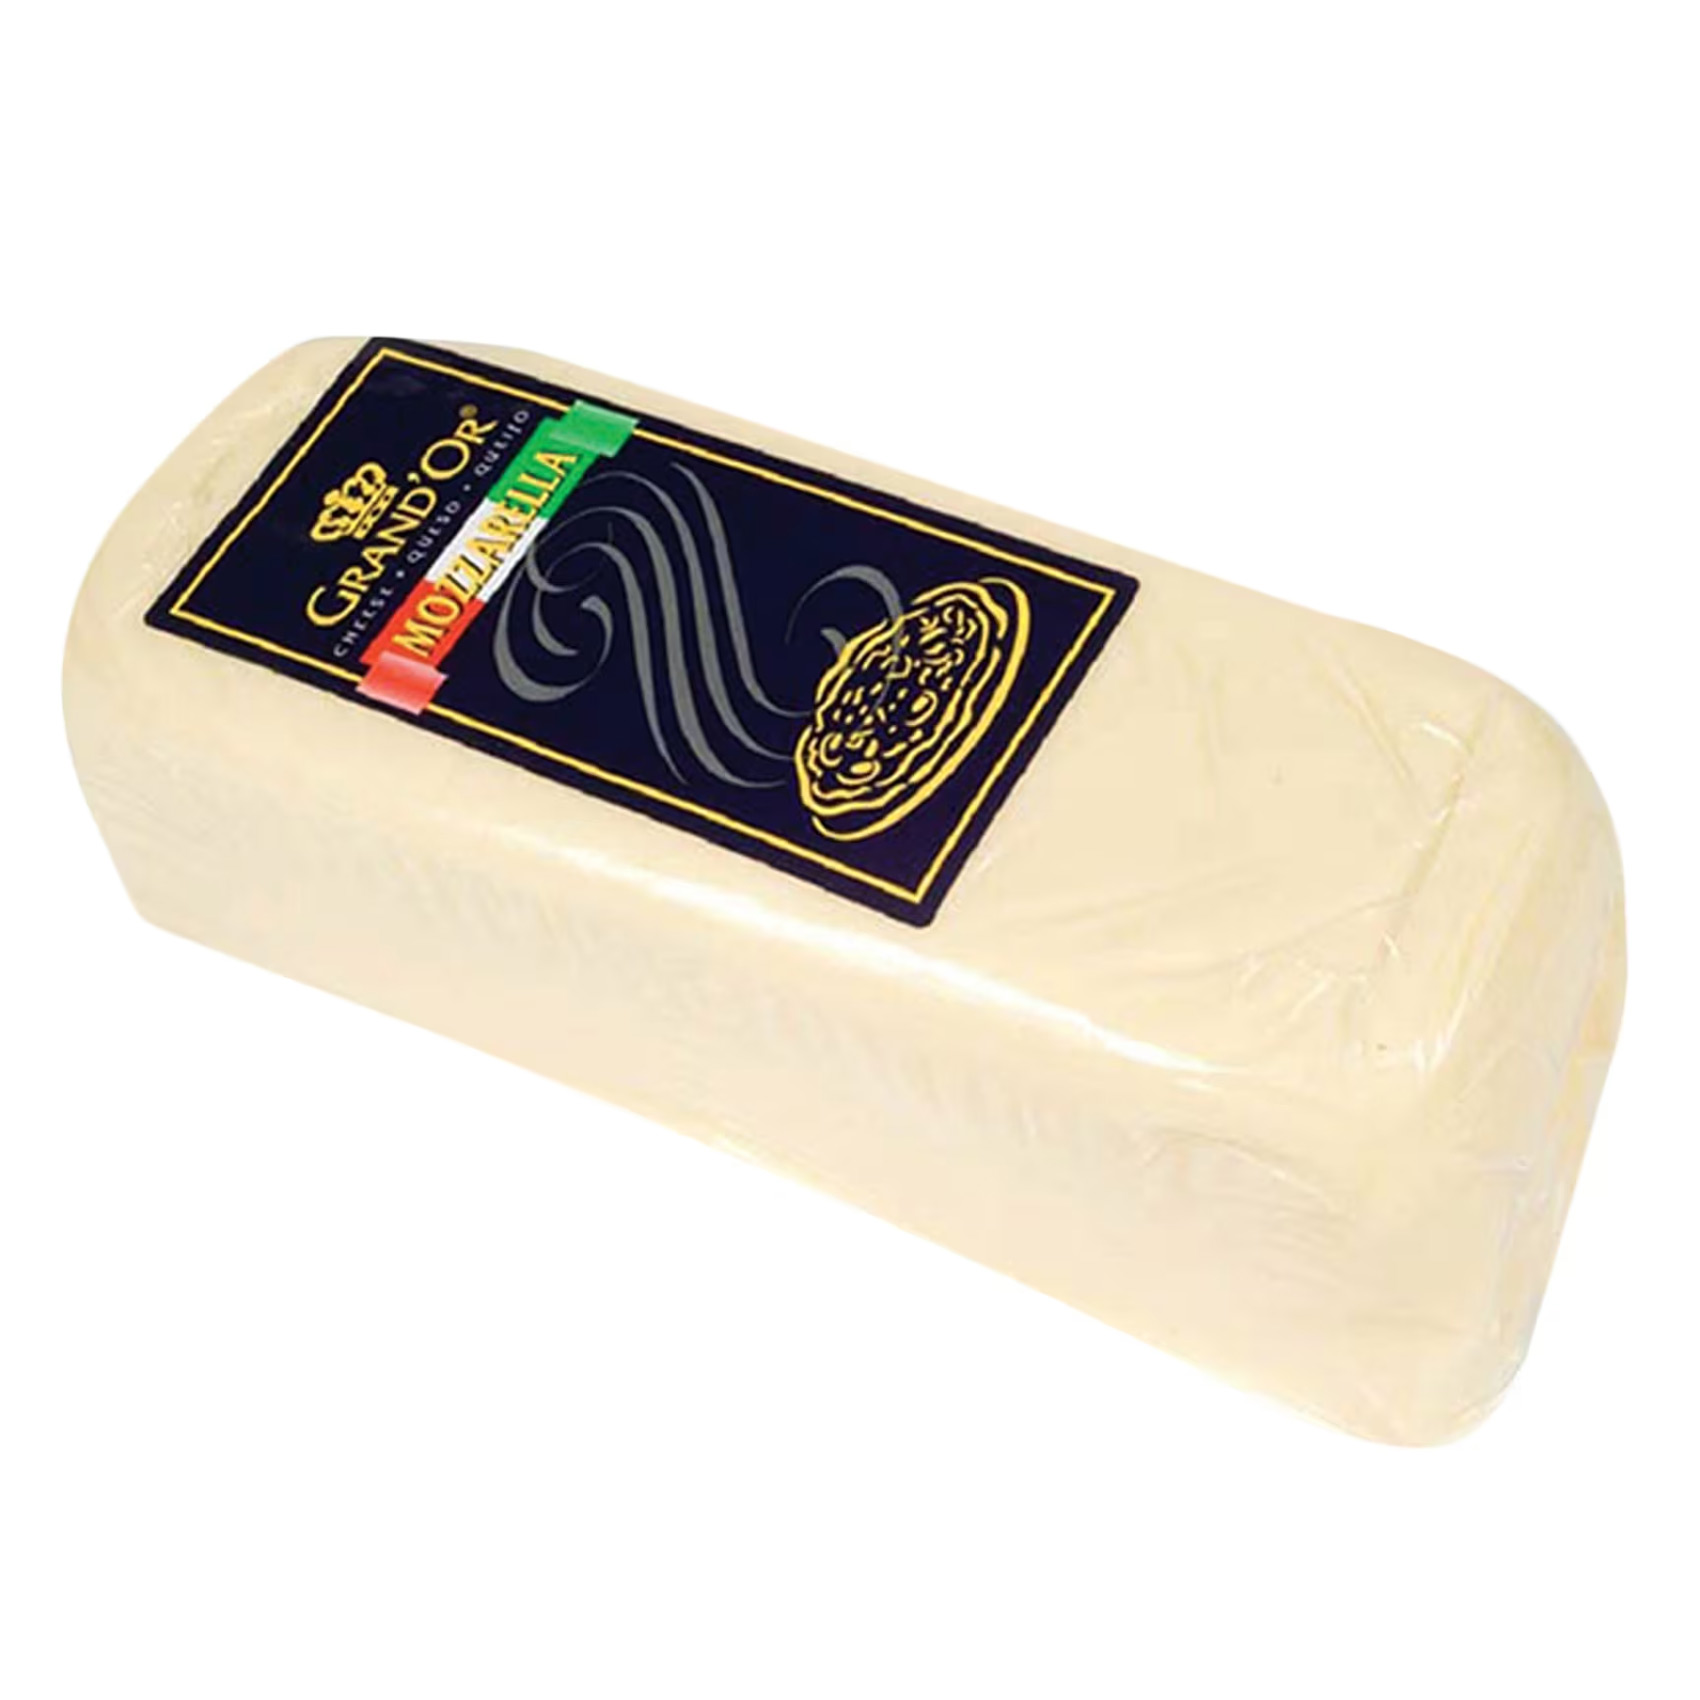 GrandOr Mozzarella Cheese